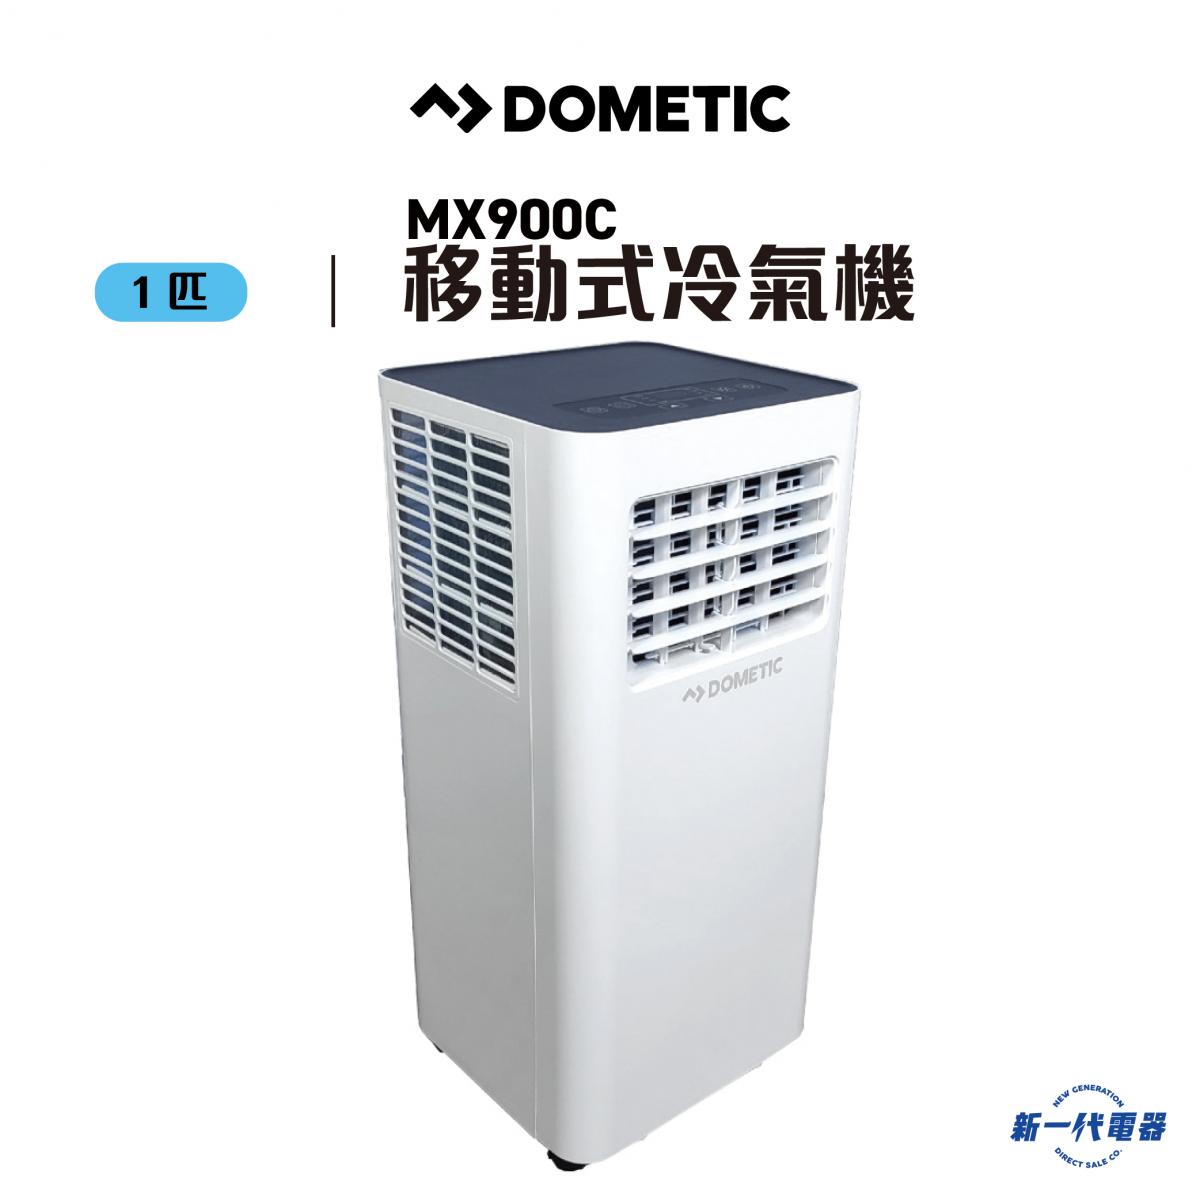 DOMETIC | MX900C - 1匹移動式冷氣機(淨冷) (MX900C) | HKTVmall 香港